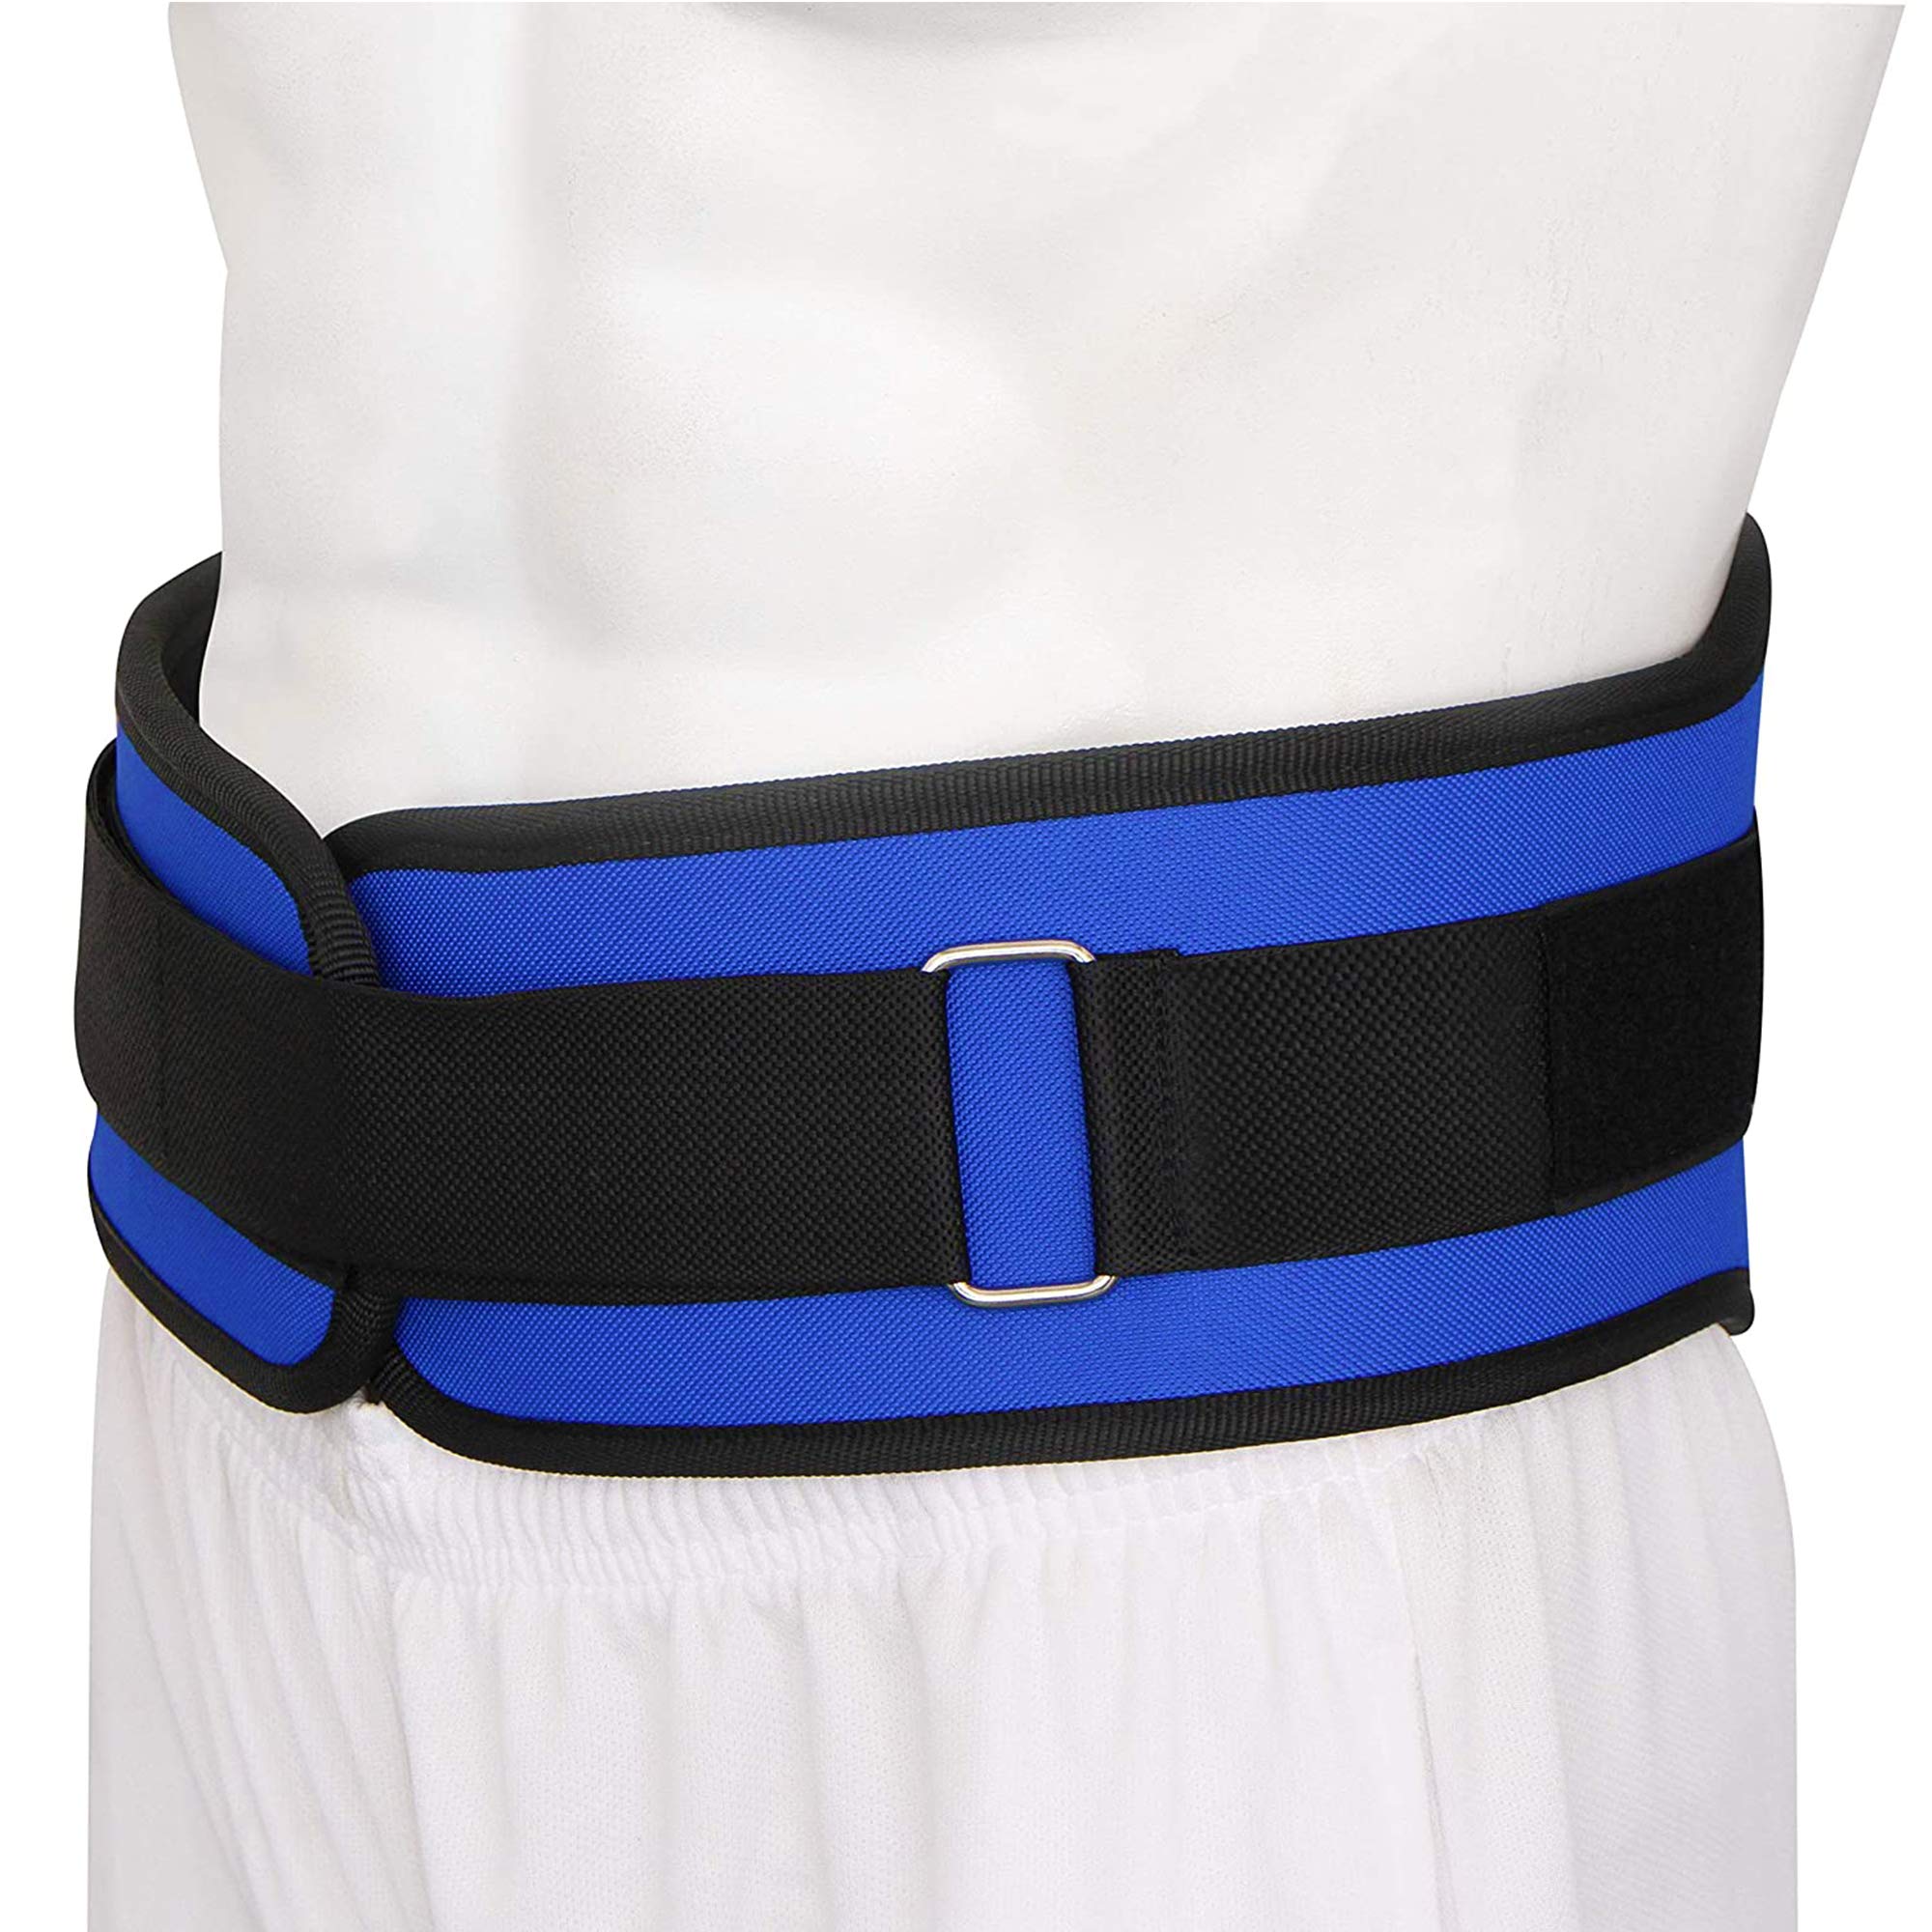 Strauss Gym Belt, 36 Inches